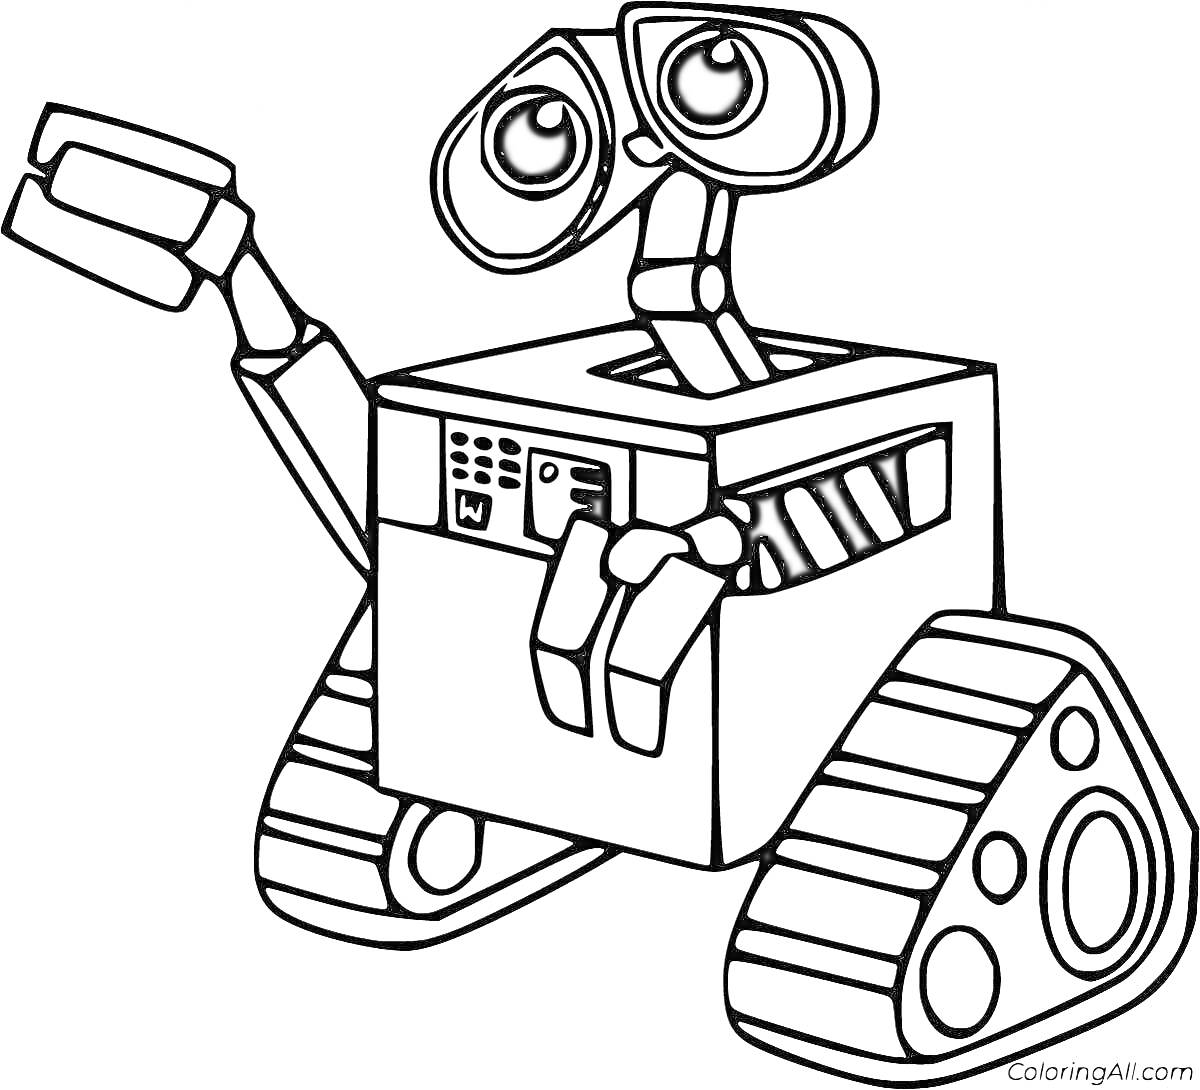 Раскраска Робот с большими глазами и гусеницами, поднявший руку вверх